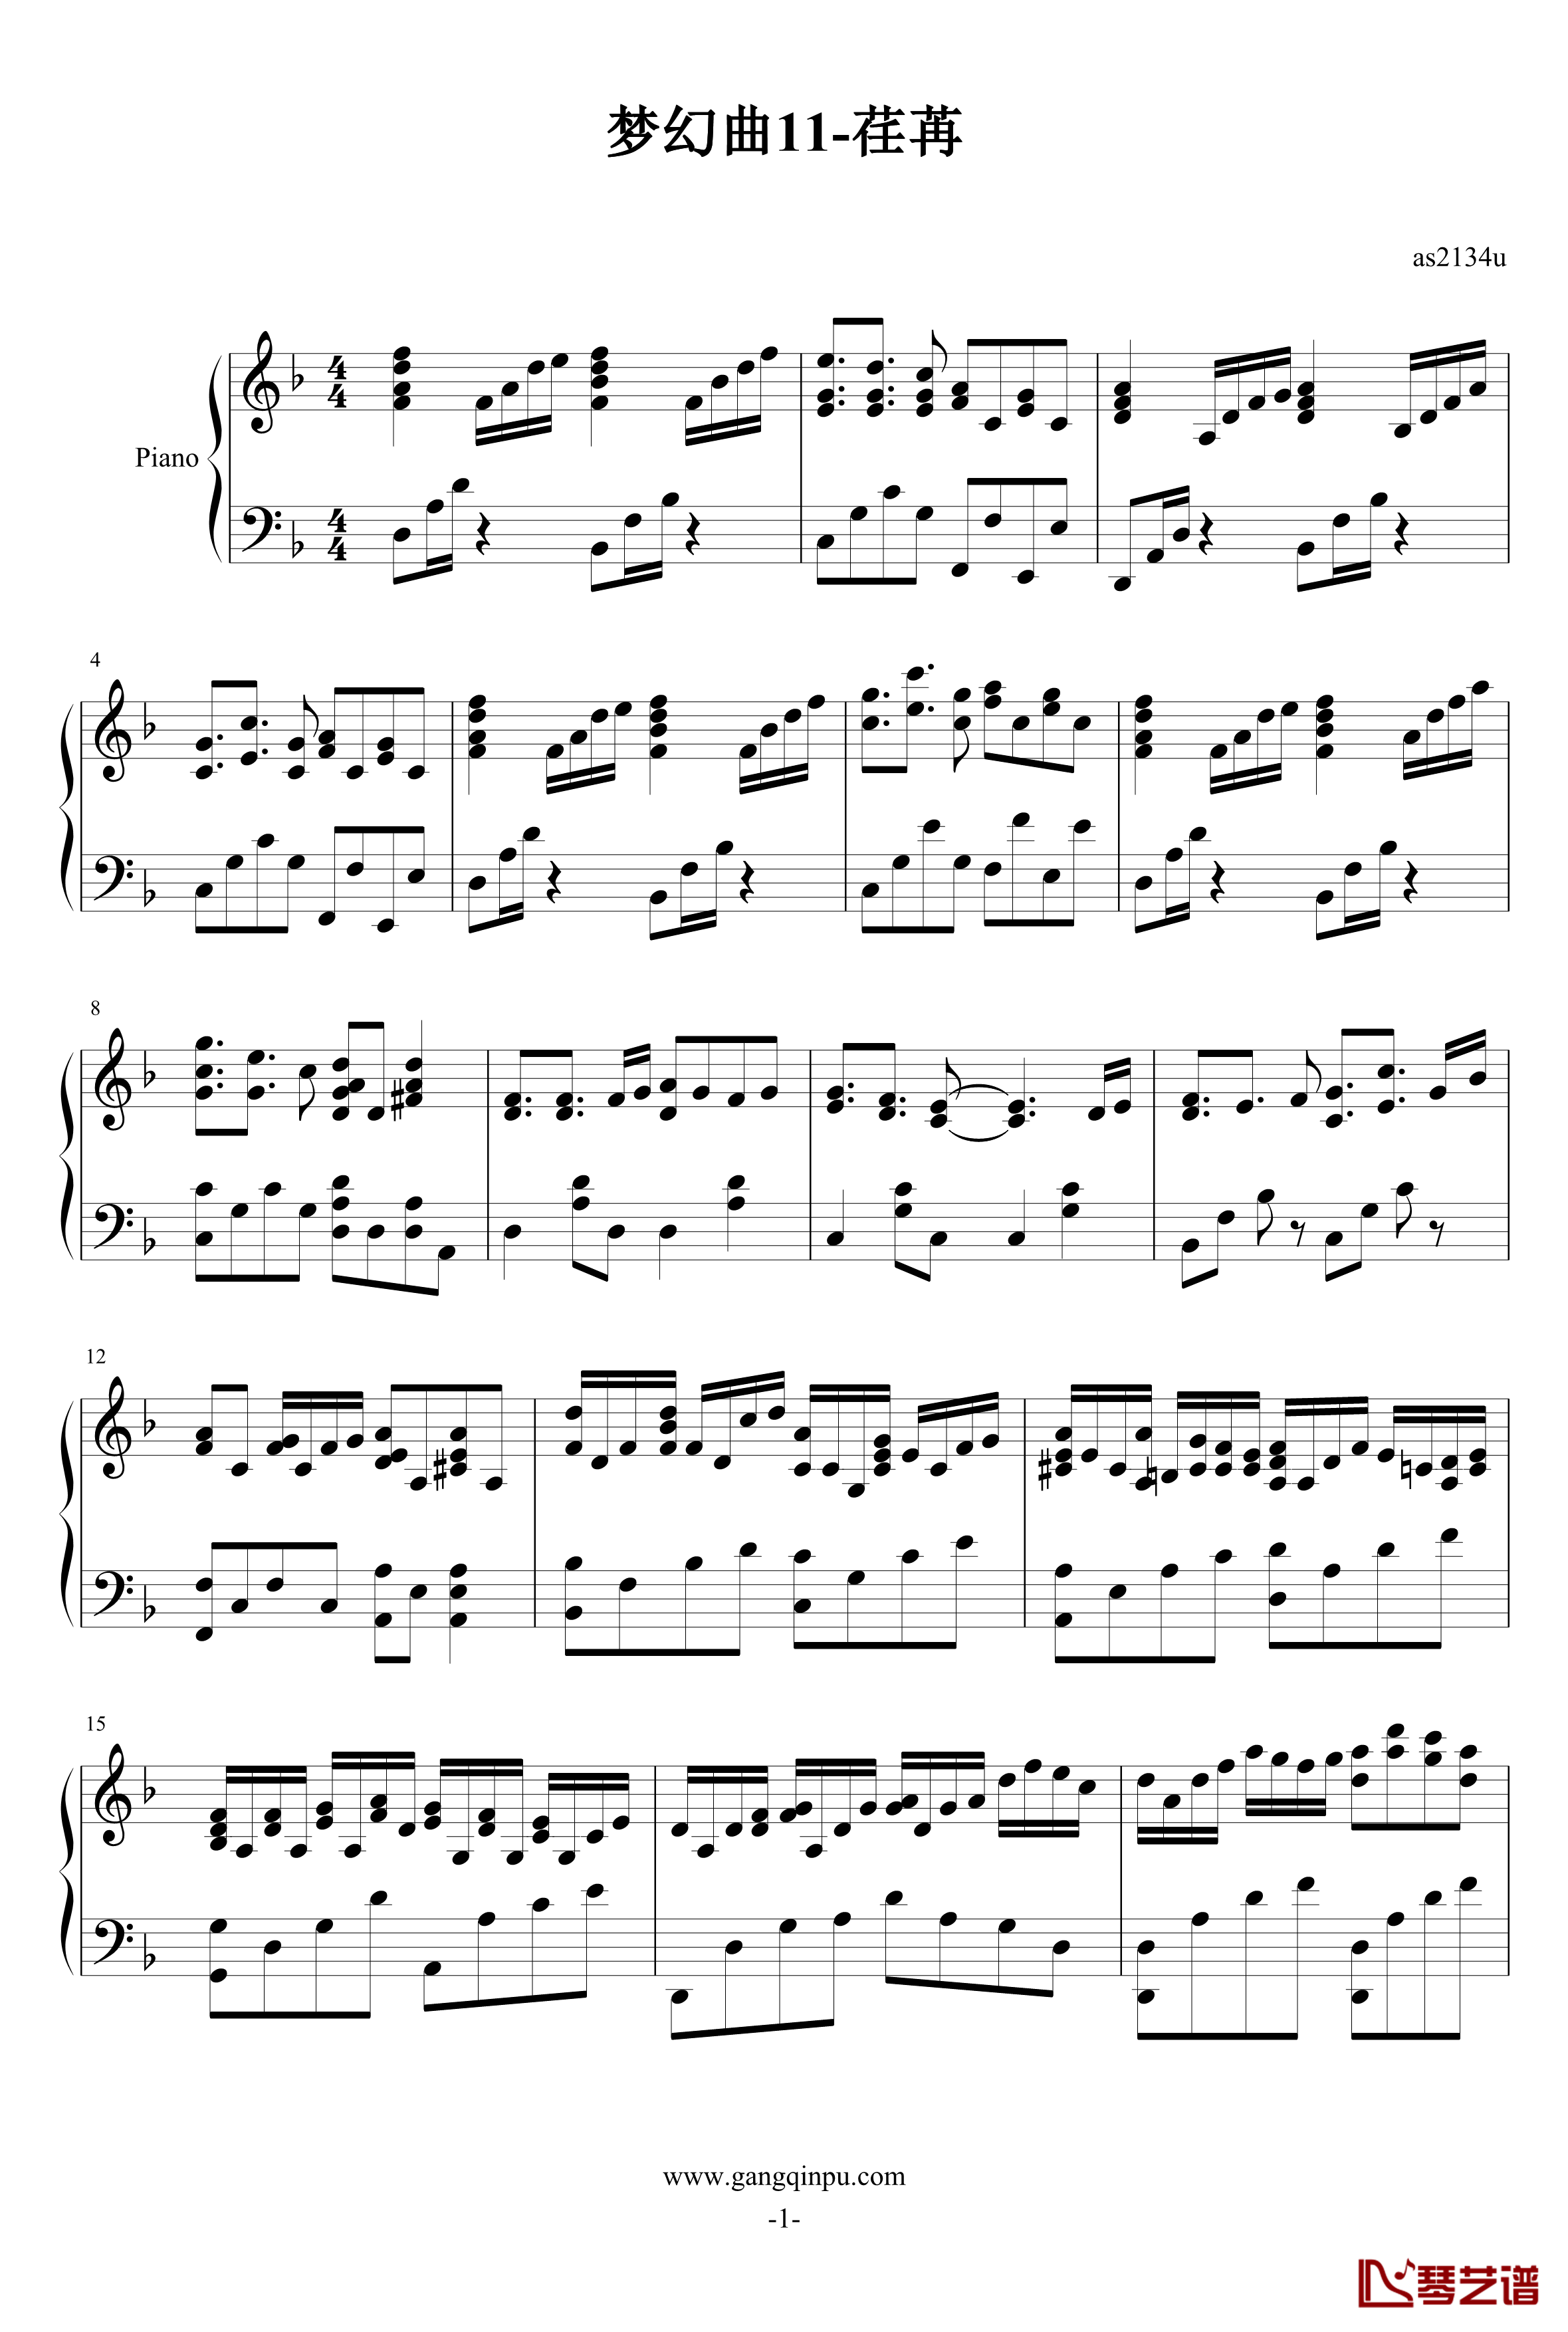 梦幻曲11荏苒钢琴谱-as21341